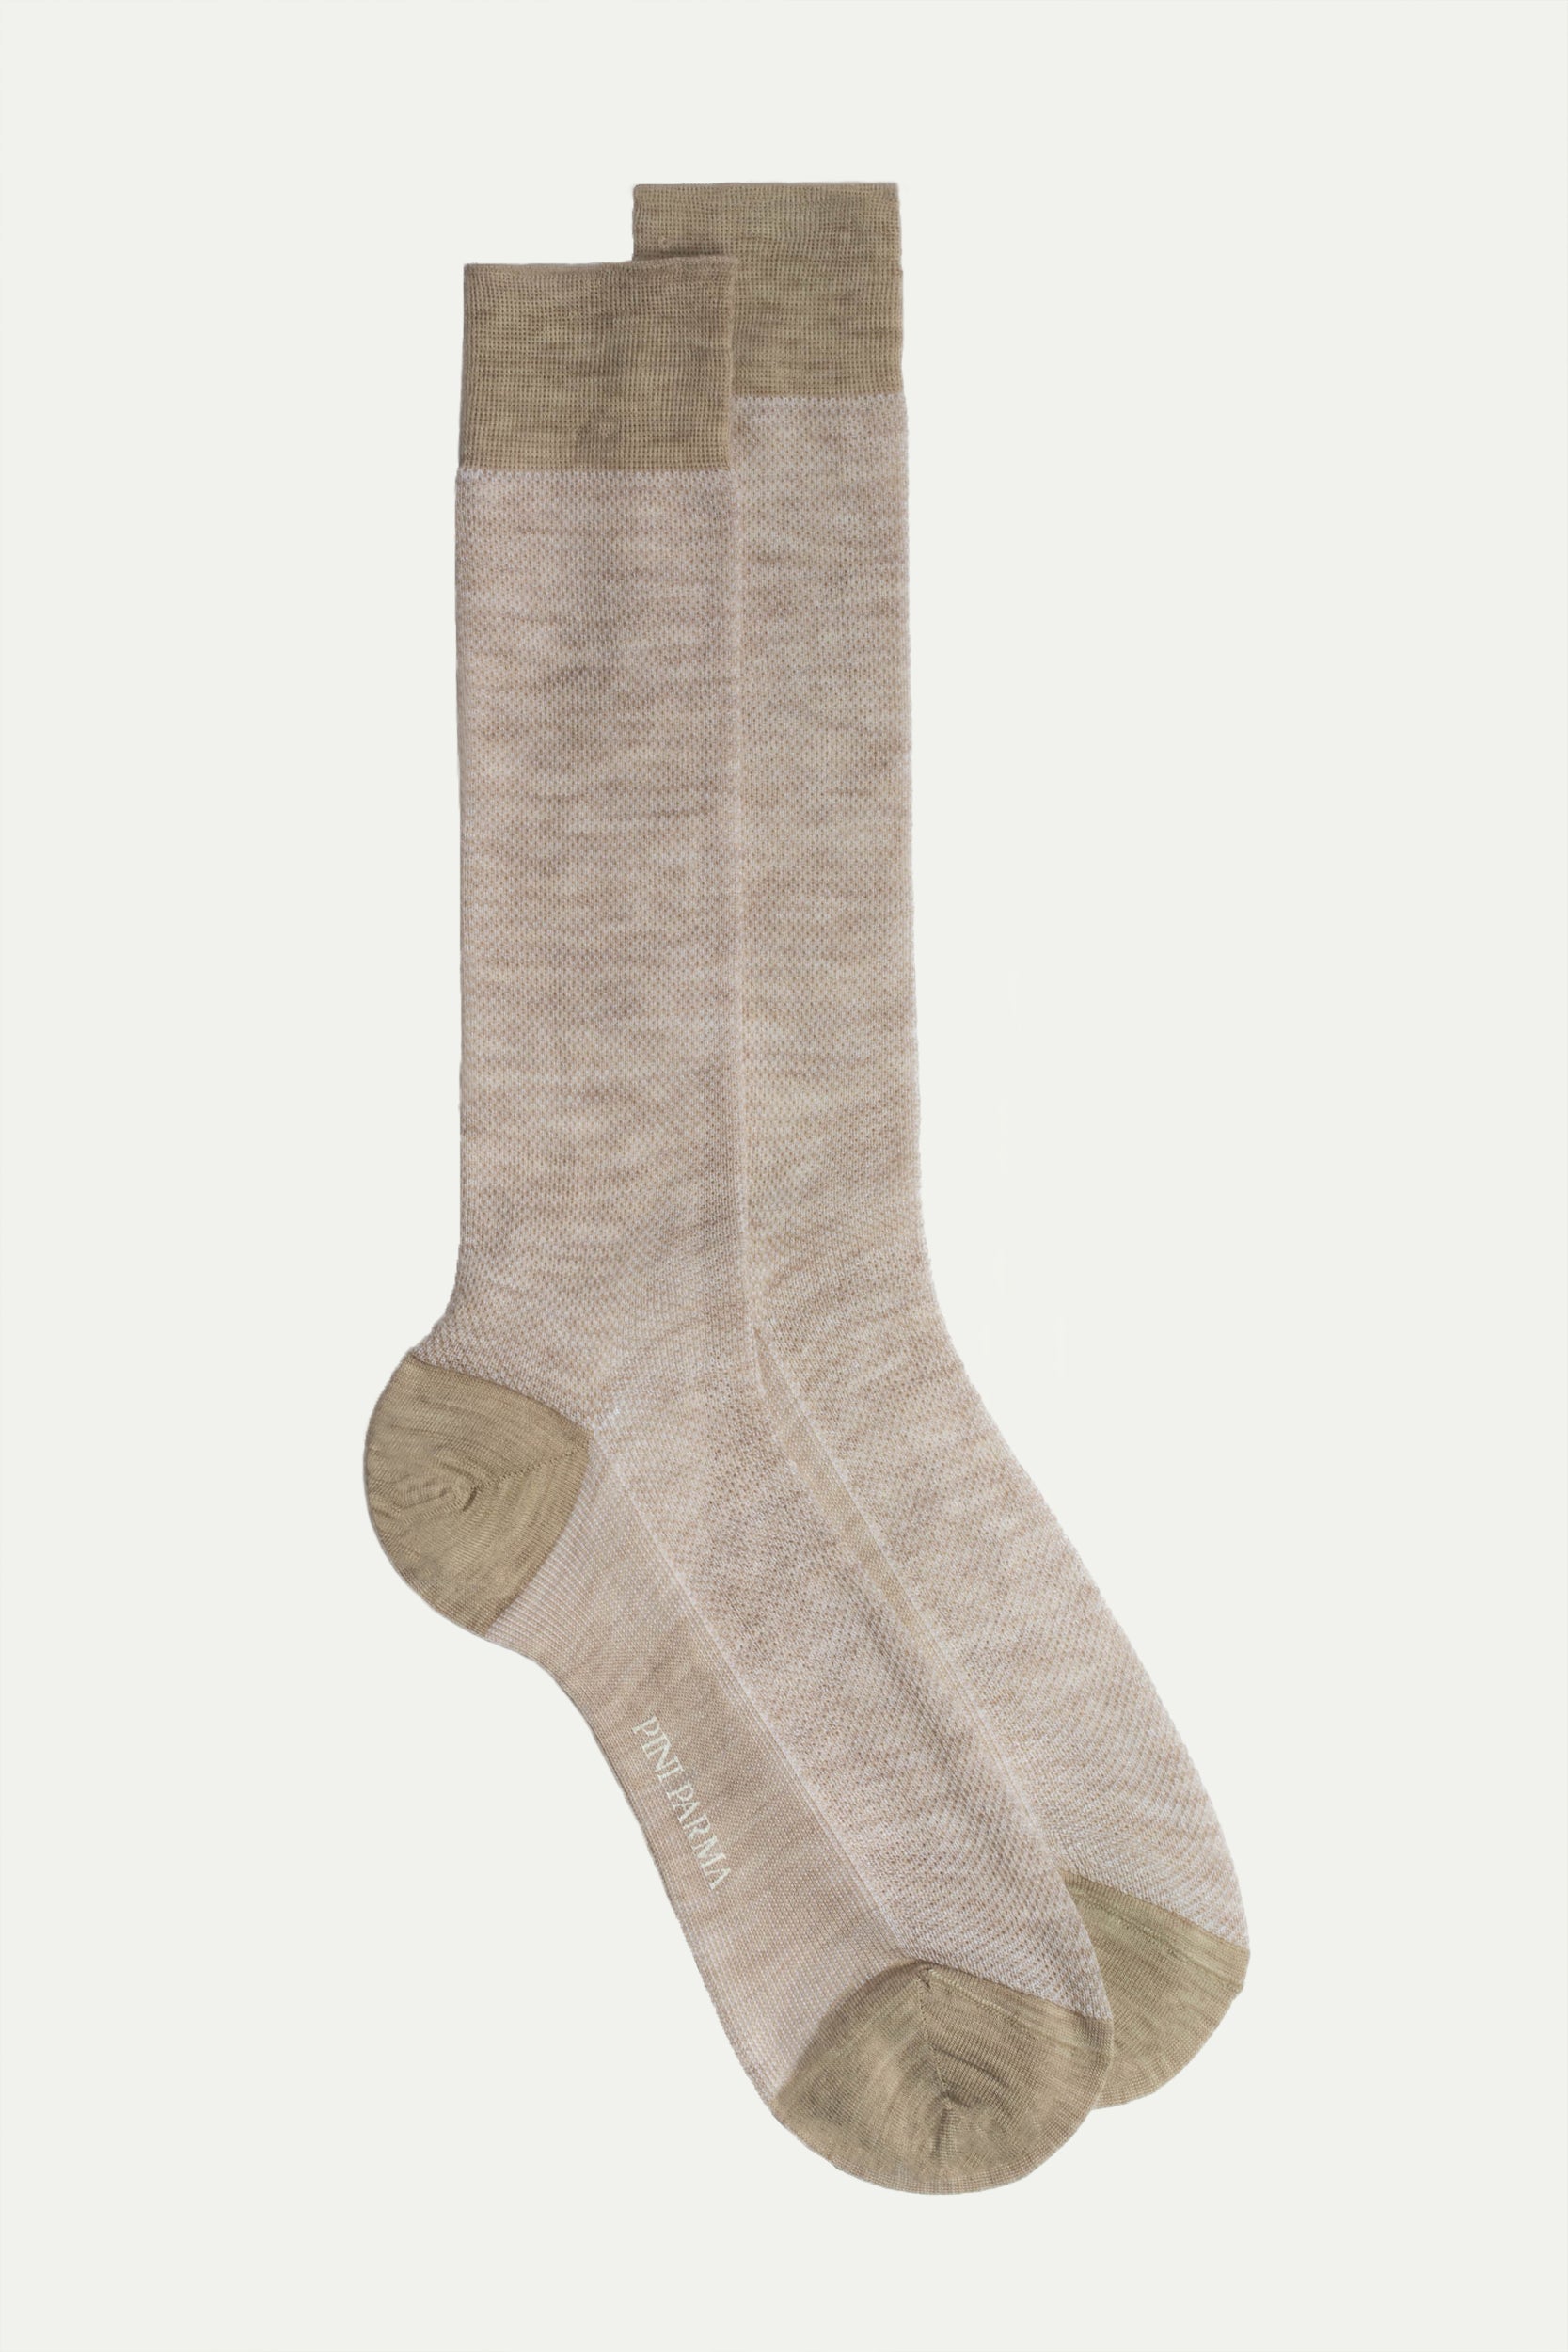 Beige micro fancy short socks - Made in Italy